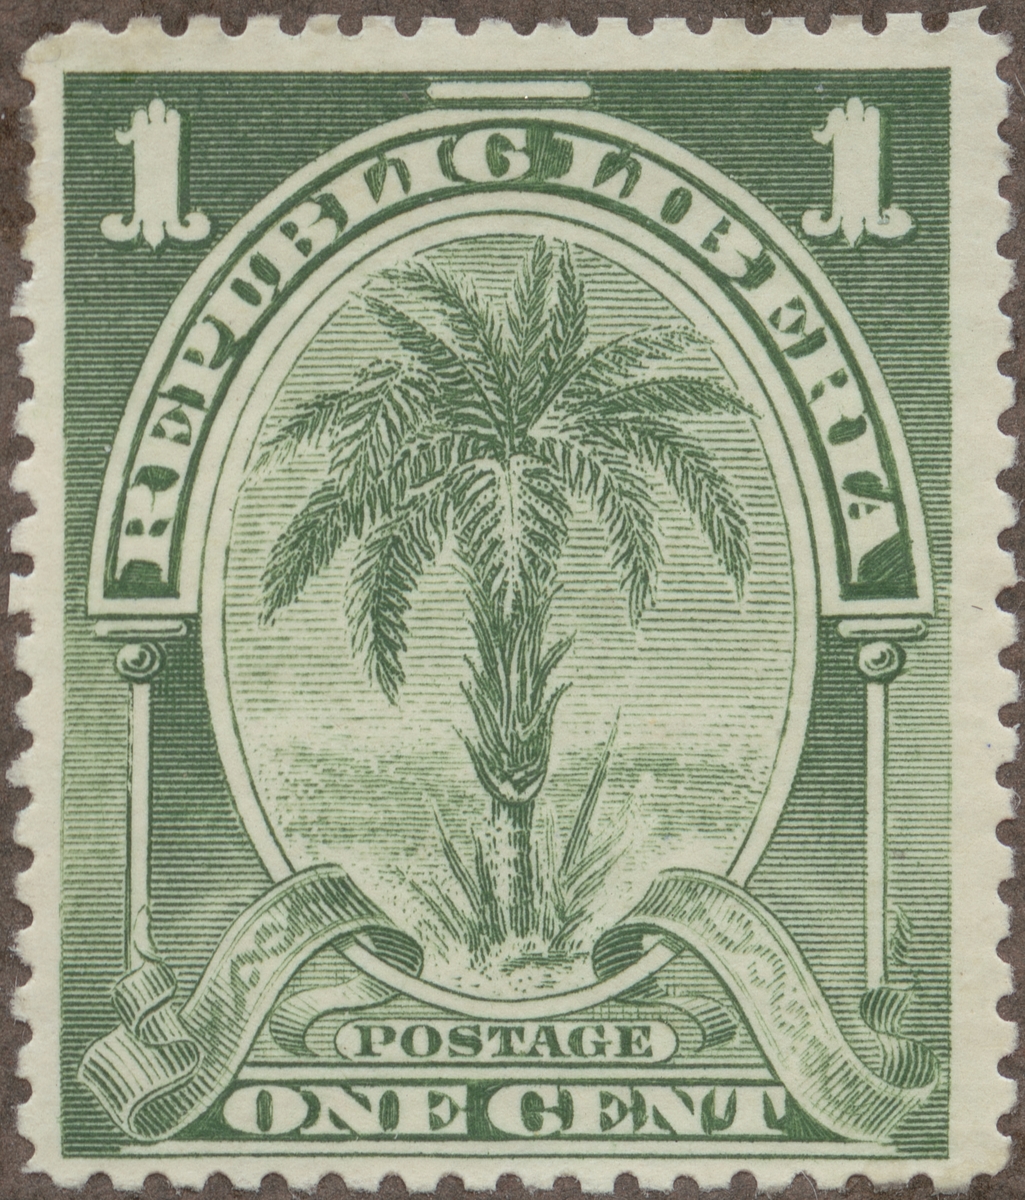 Frimärke ur Gösta Bodmans filatelistiska motivsamling, påbörjad 1950.
Frimärke från Liberia, 1900. Motiv av dadelpalm.